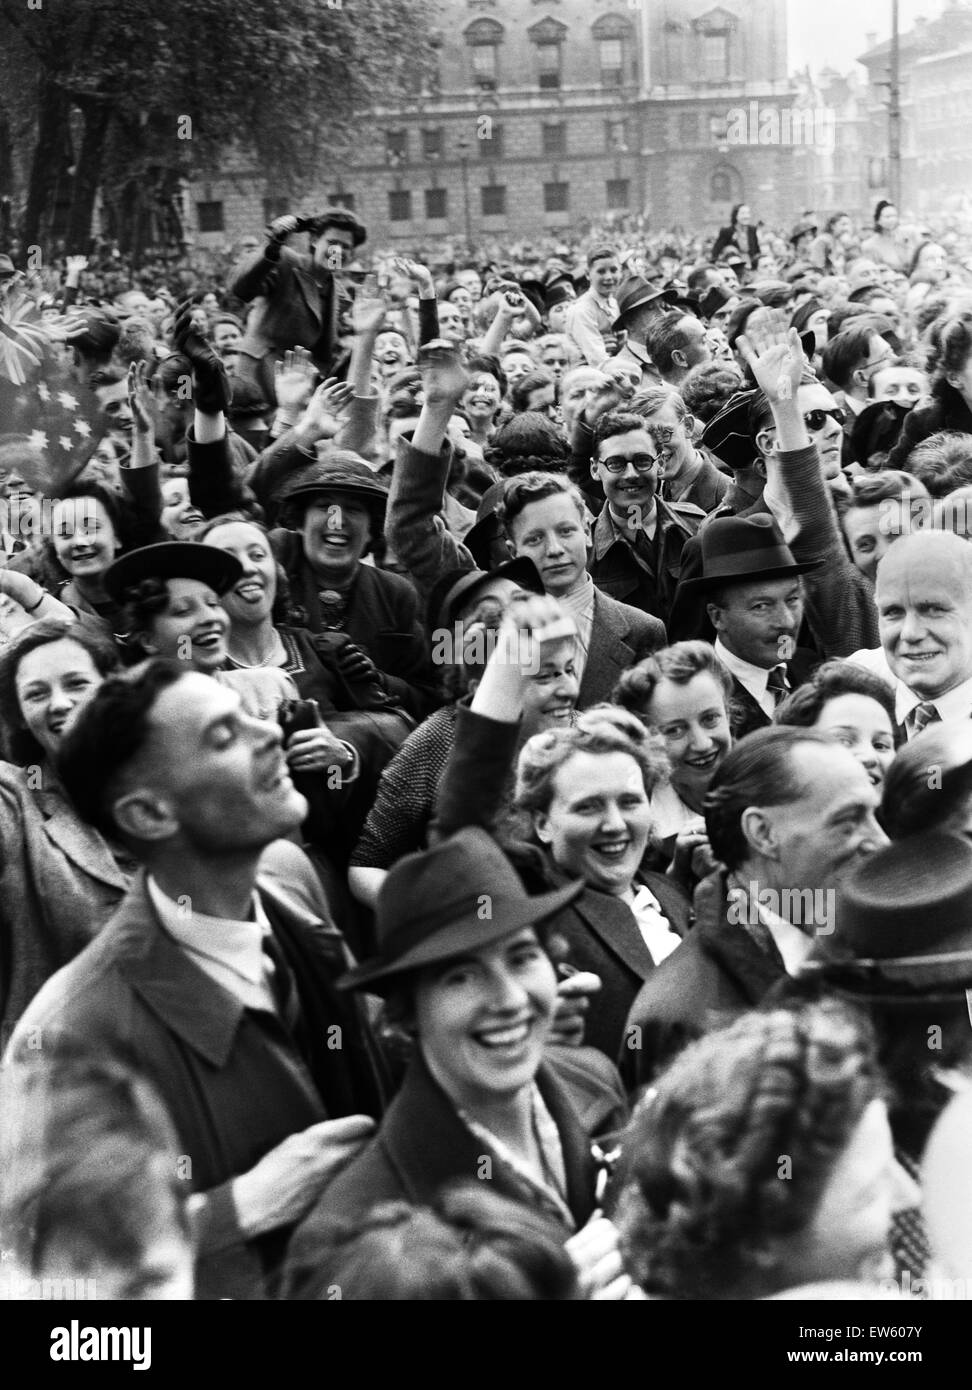 VE Day Feierlichkeiten in London am Ende des zweiten Weltkriegs.  Einige der großen Menschenmenge versammelt in Westminster für die Feierlichkeiten.   8. Mai 1945. Stockfoto